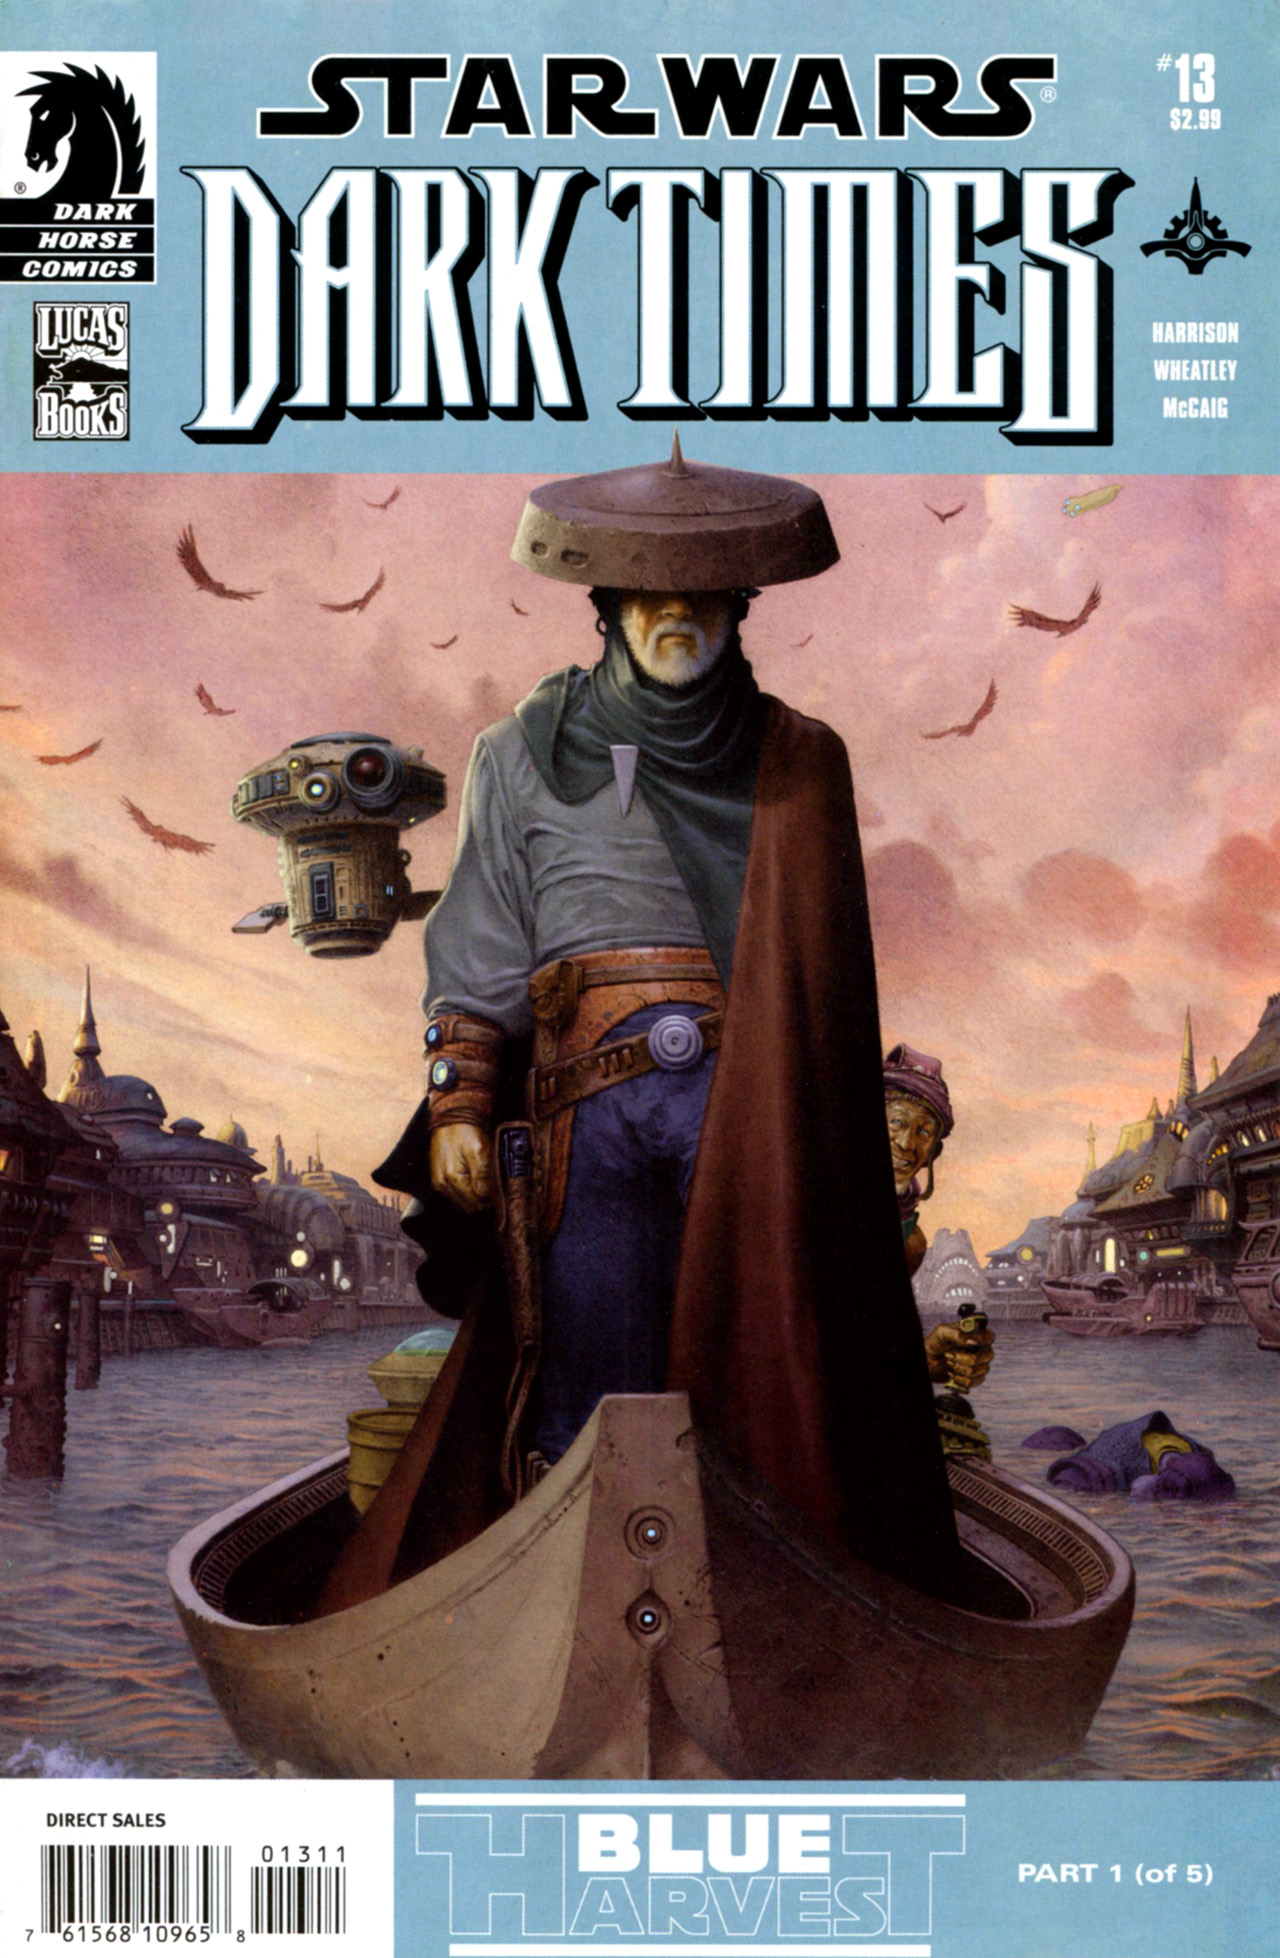 Read online Star Wars: Dark Times comic -  Issue #13 - Blue Harvest, Part 1 - 1